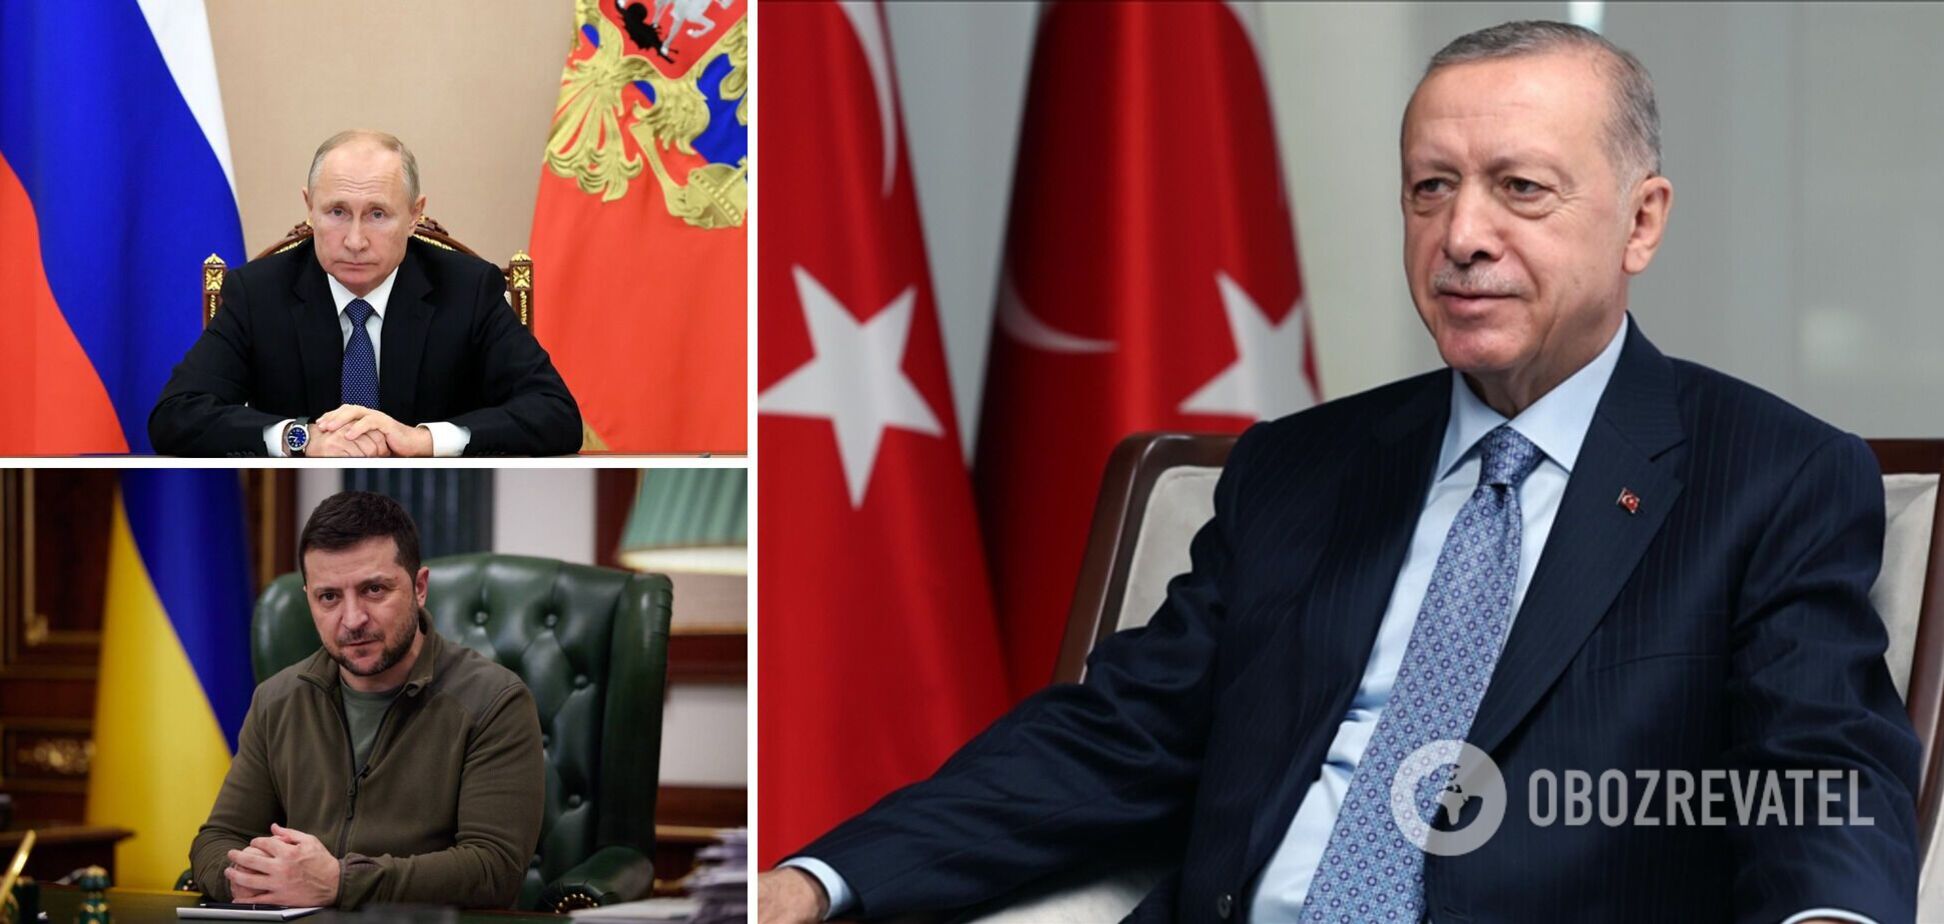 Зеленский и Путин могут посетить Турцию после инаугурации Эрдогана, ключевыми будут два вопроса – СМИ